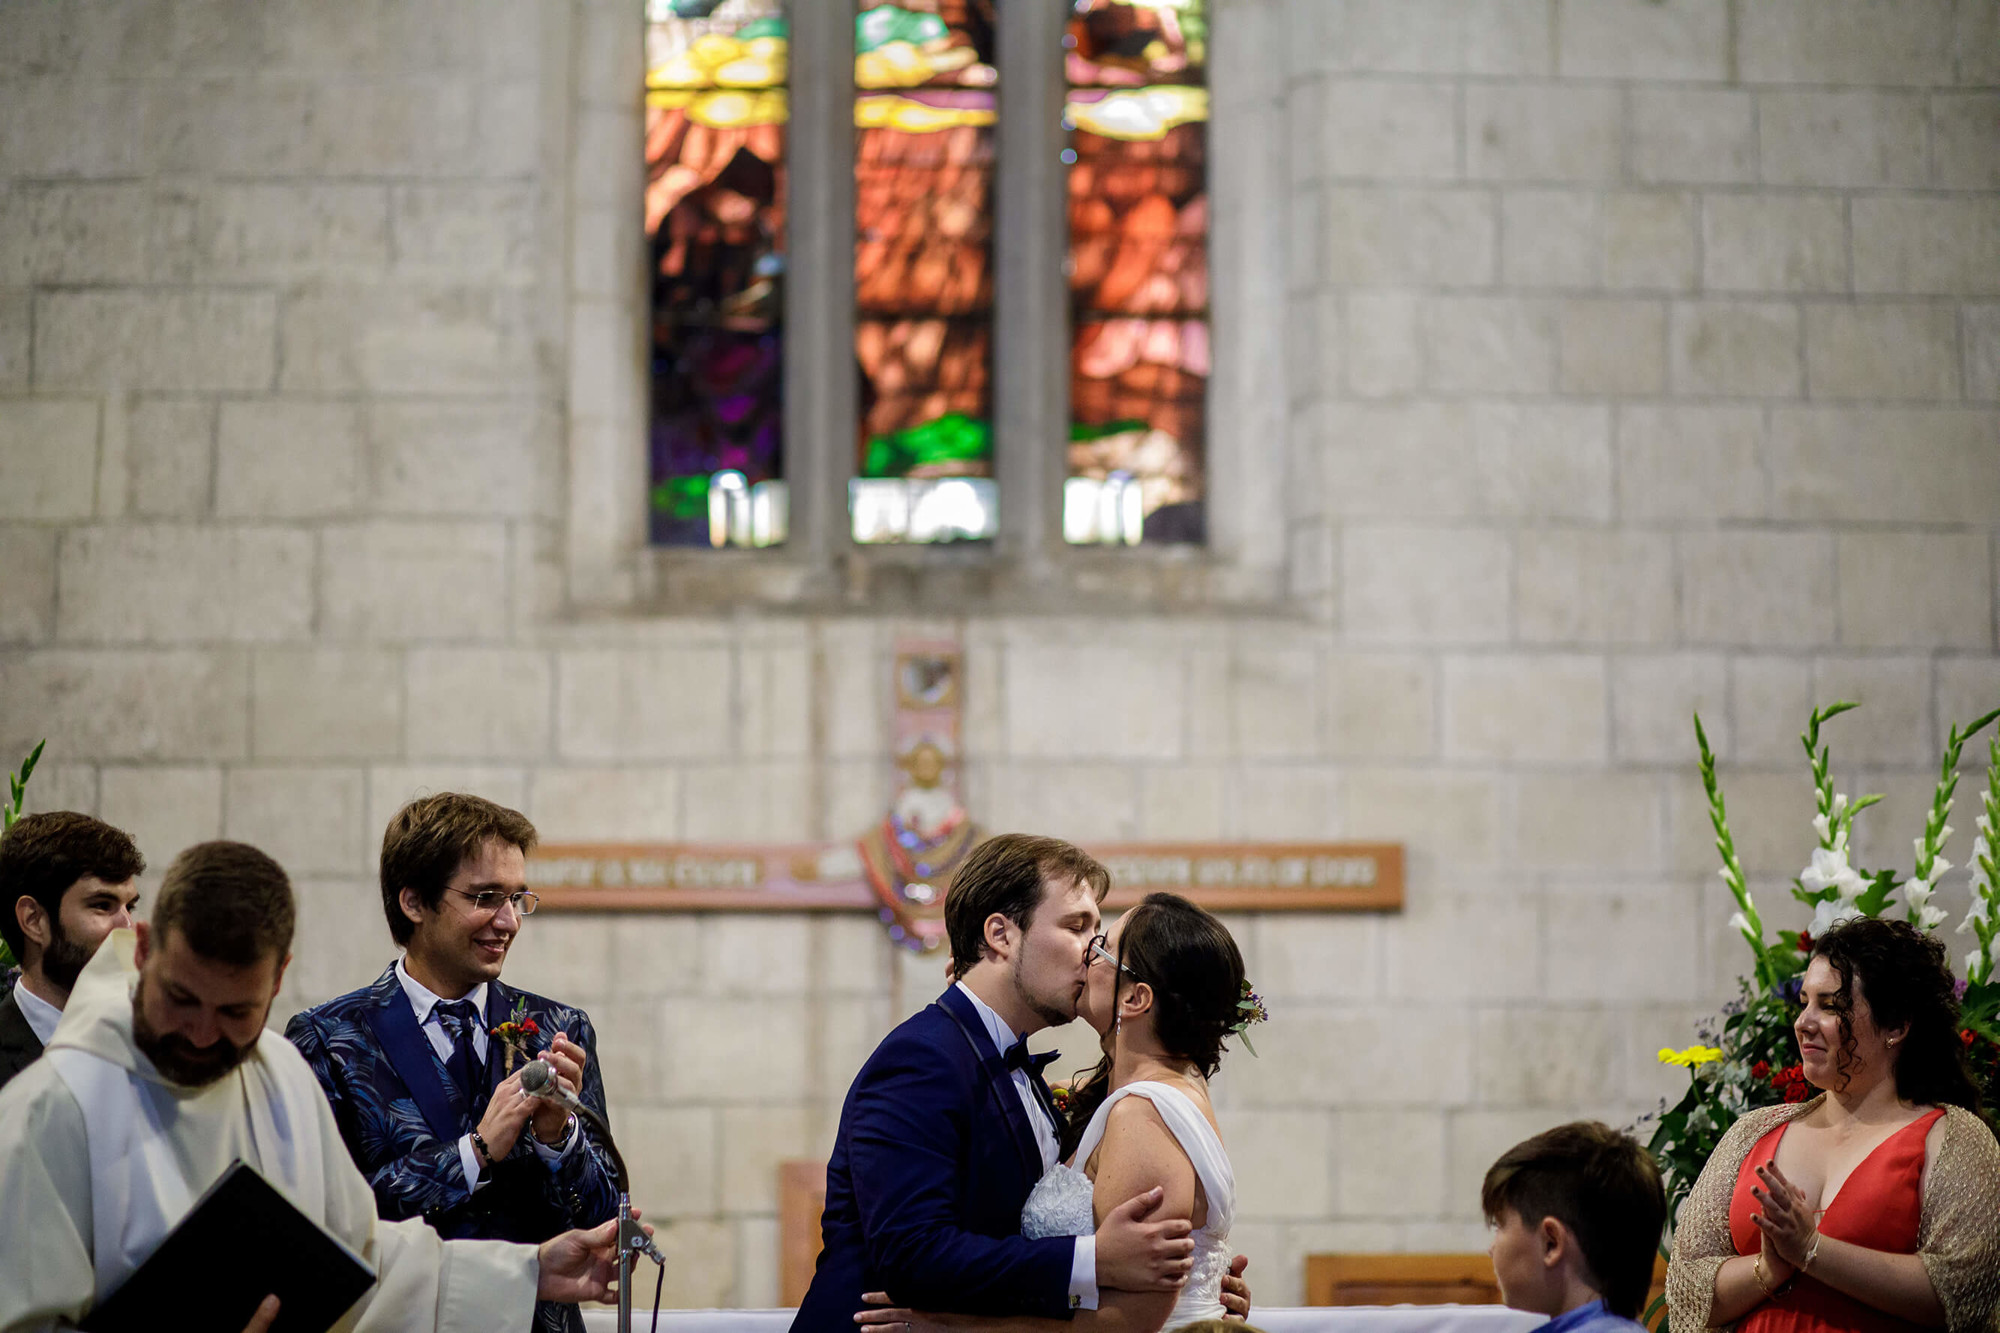 Primer petó dels nuvis a la boda a l'església de Sant Francesc de Vilafranca del Penedès.